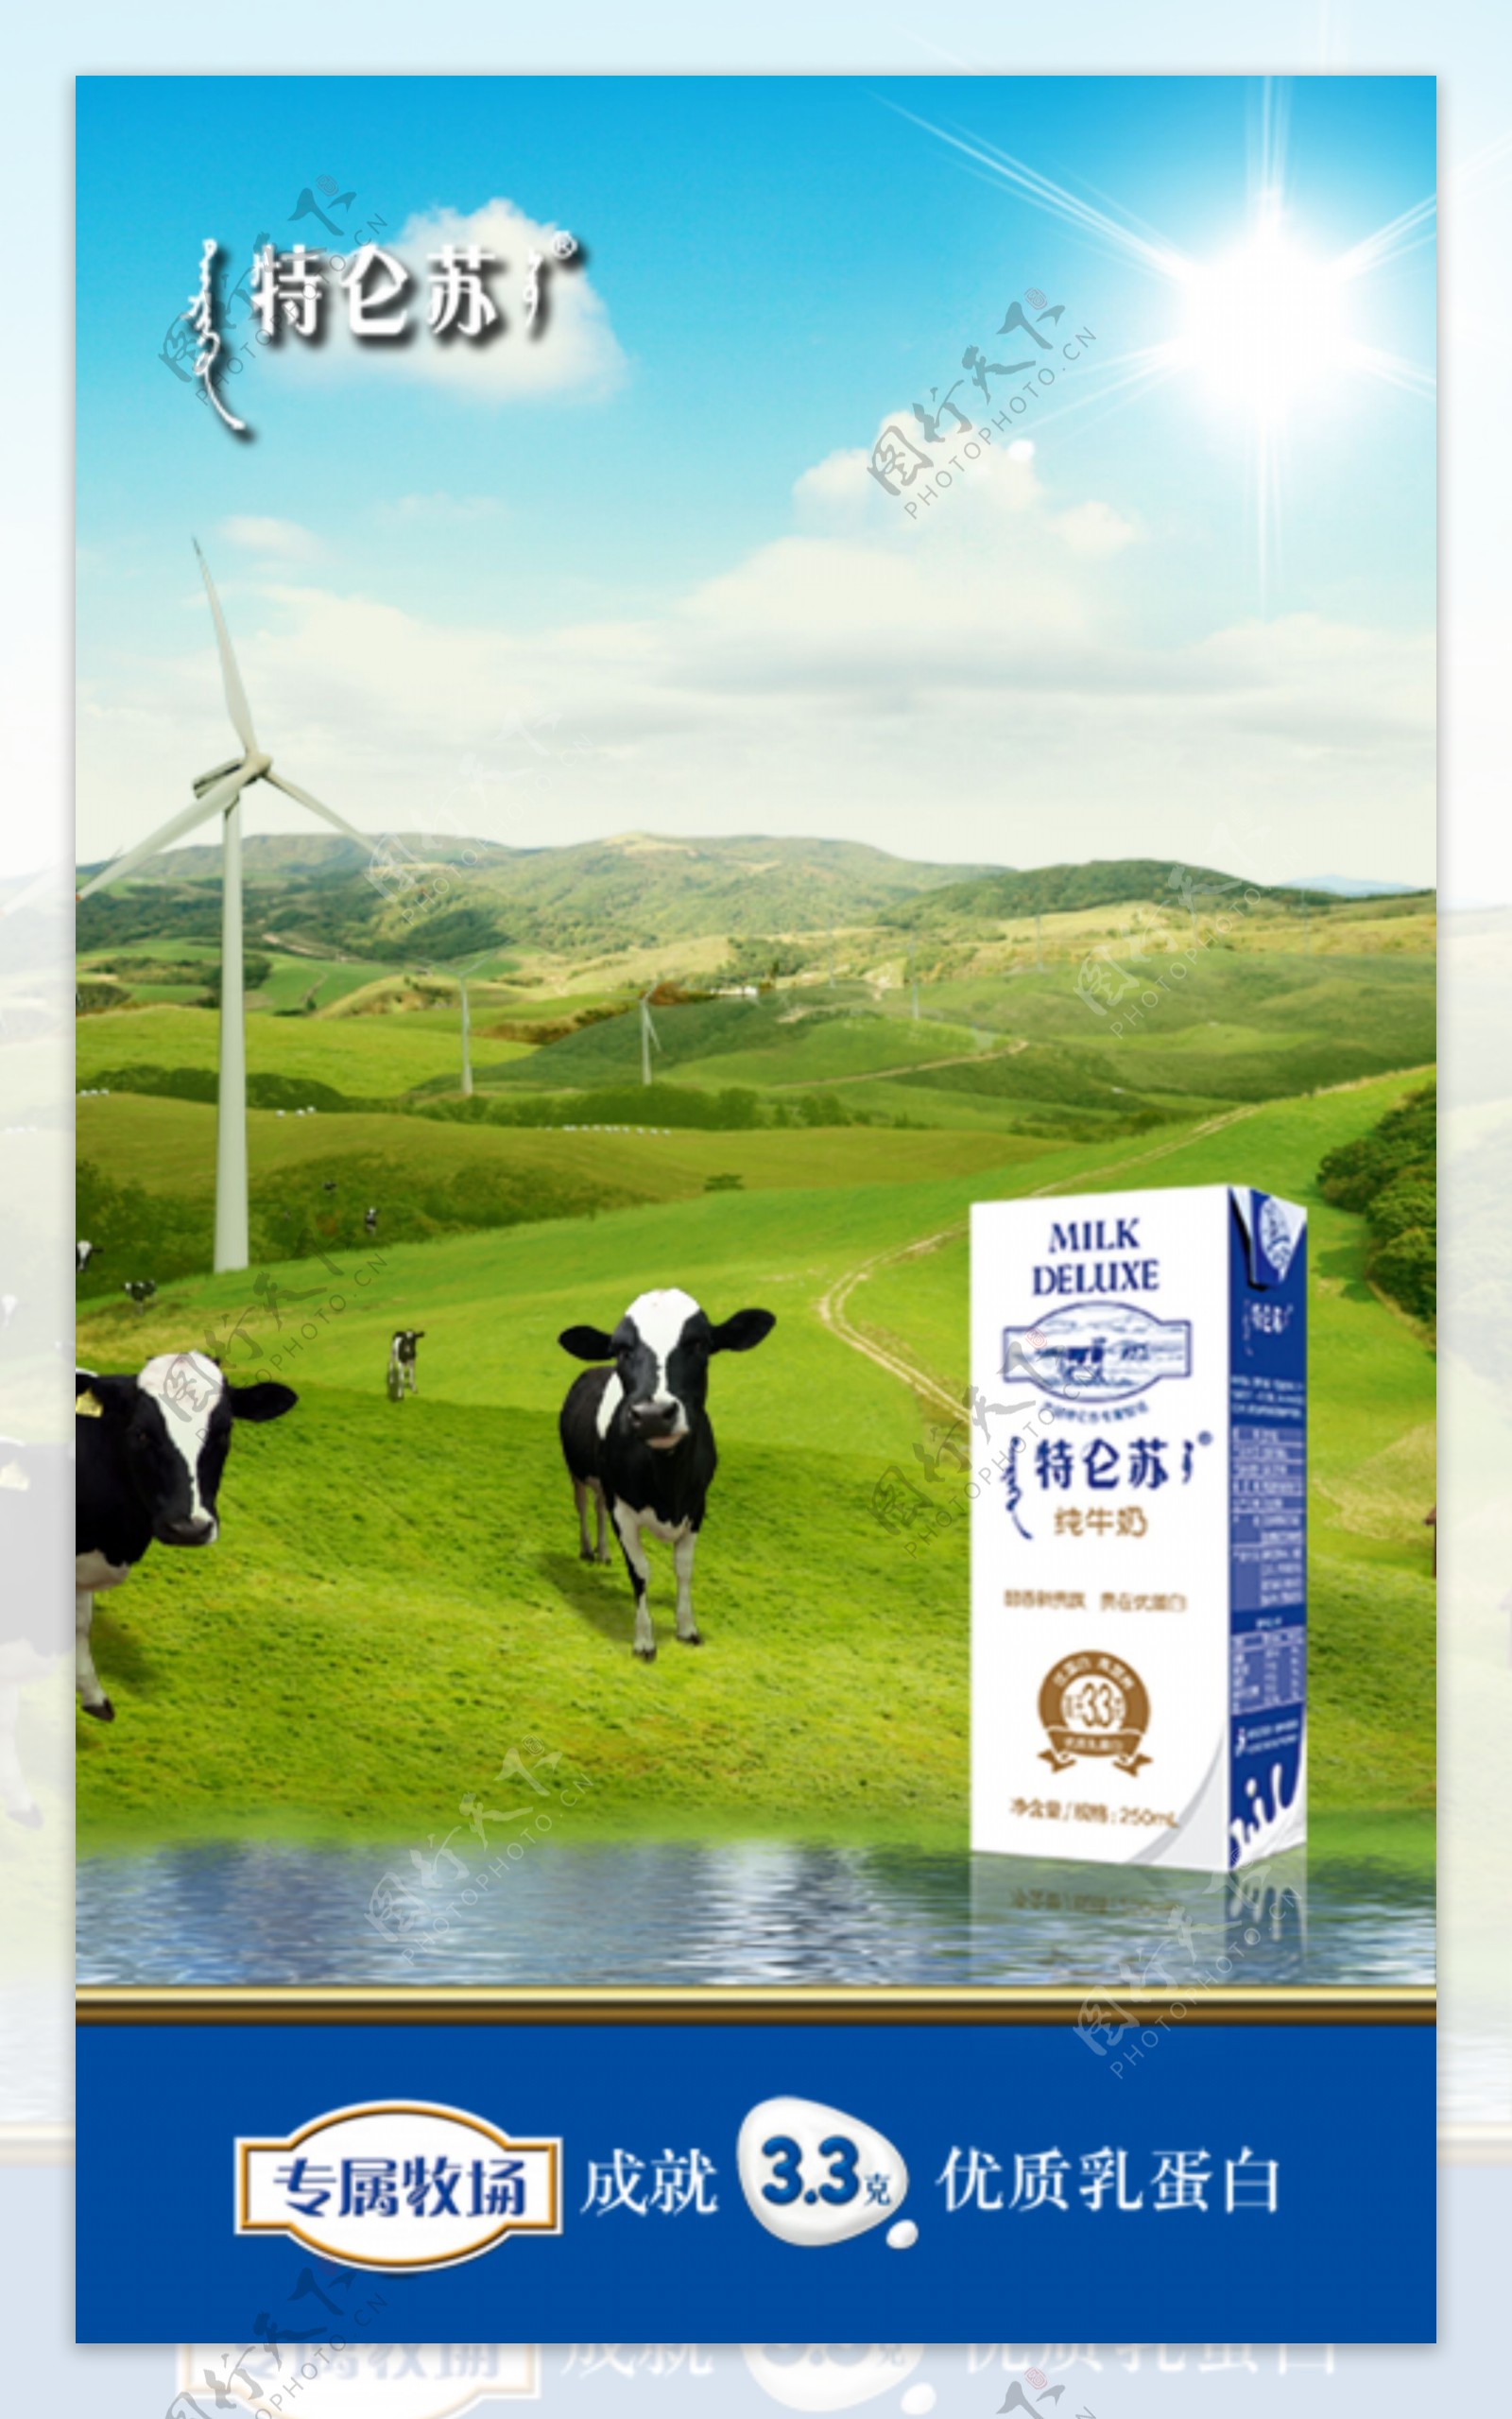 特仑苏沙漠·有机纯牛奶_内蒙古蒙牛乳业（集团）股份有限公司_Marking Awards-全球食品包装设计大赛